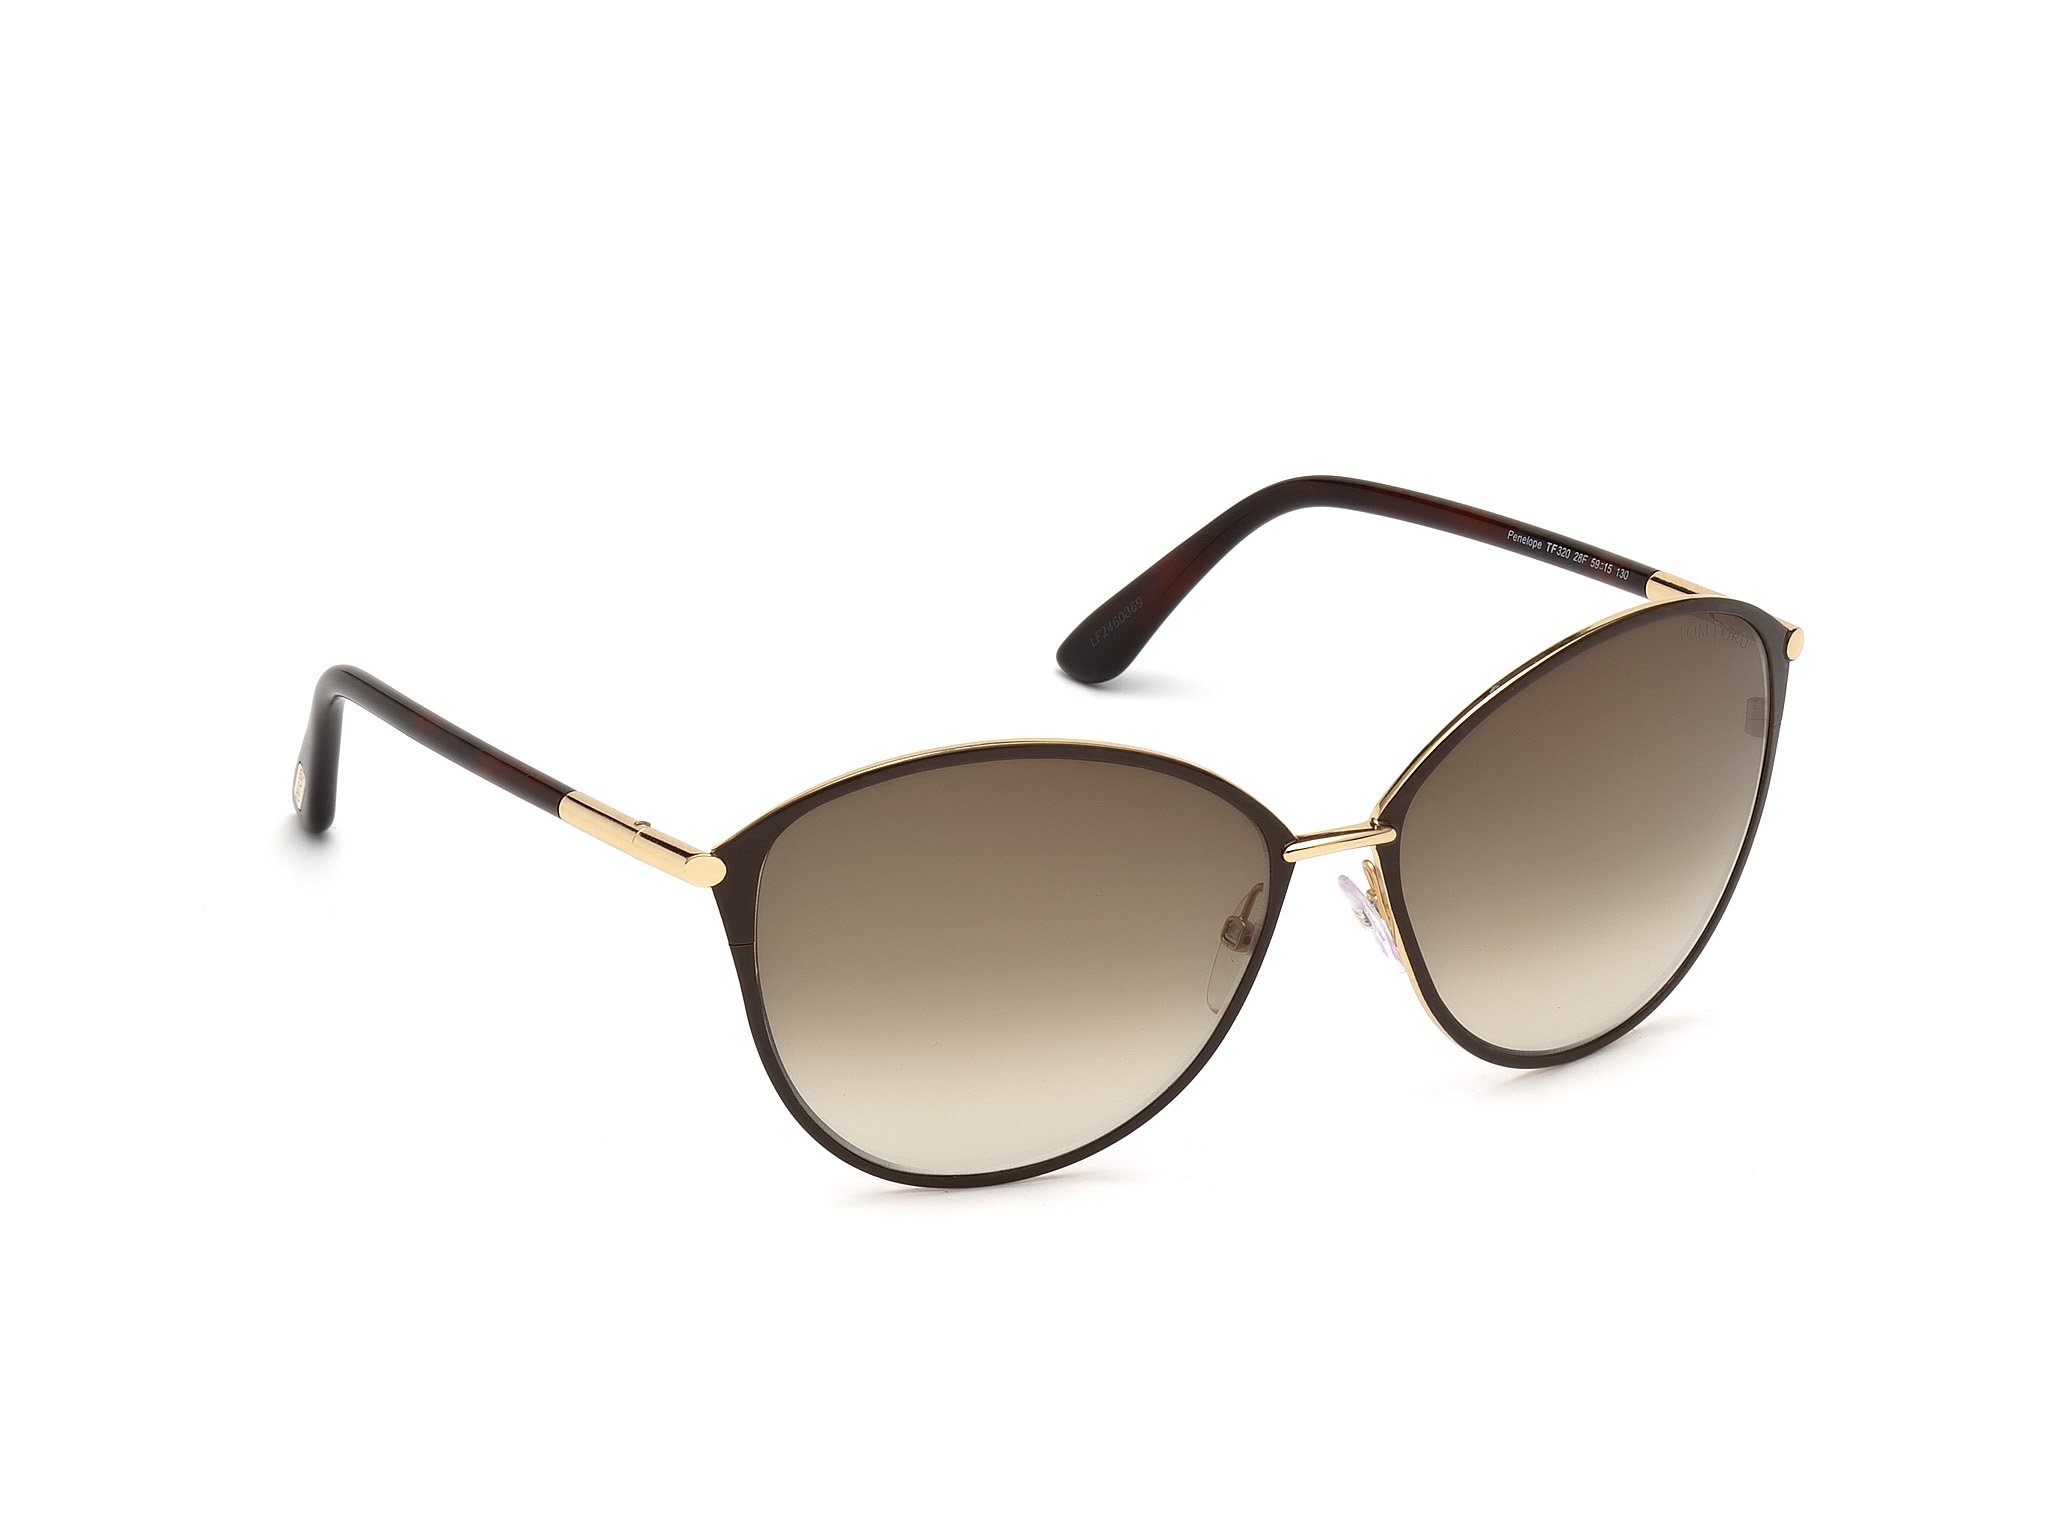 Das Bild zeigt die Sonnenbrille Penelope FT0320 von der Marke Tom Ford in schwarz gold von links